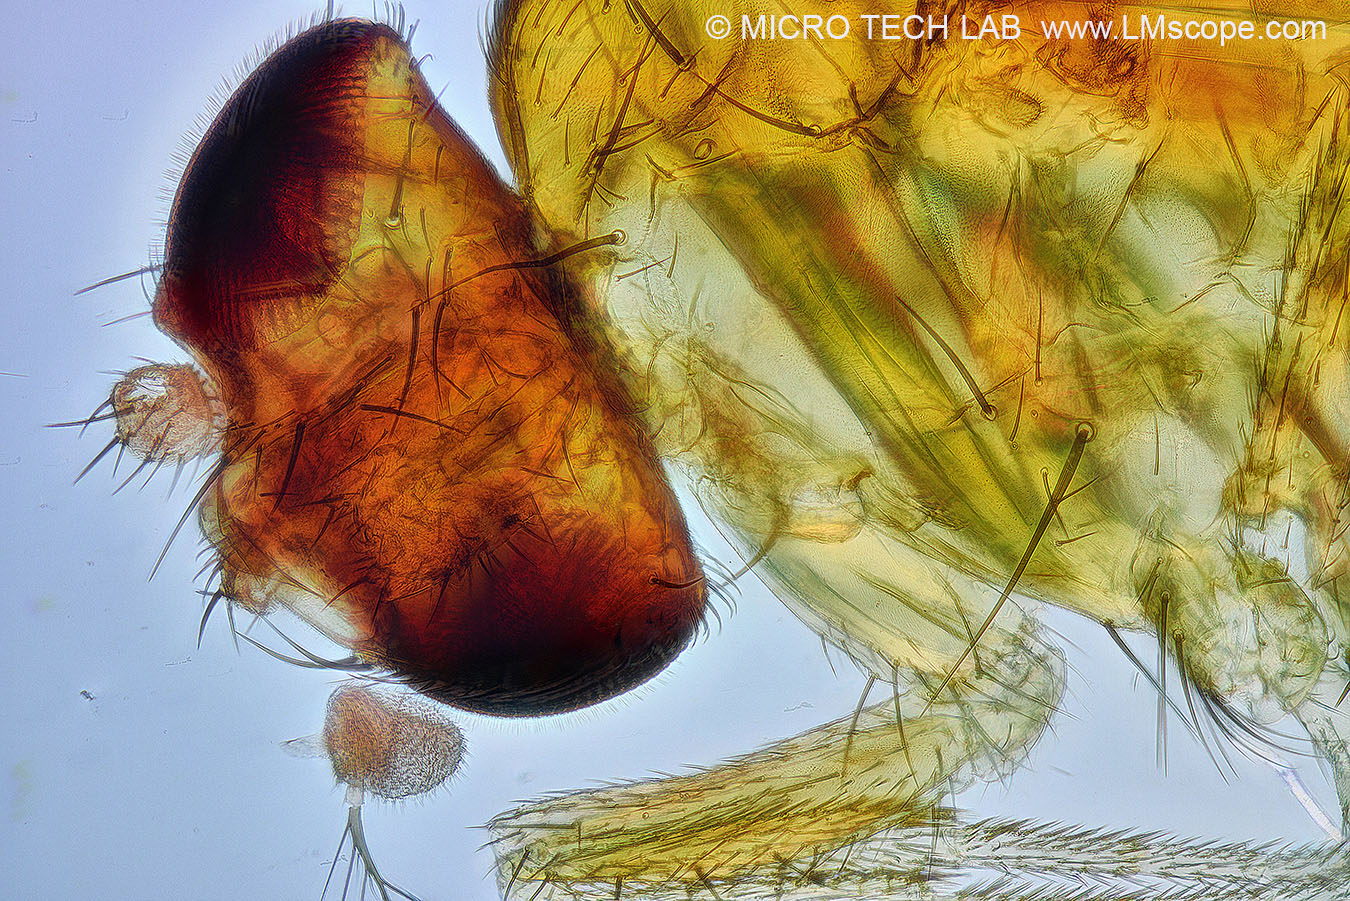 Taufliege (Drosophila)